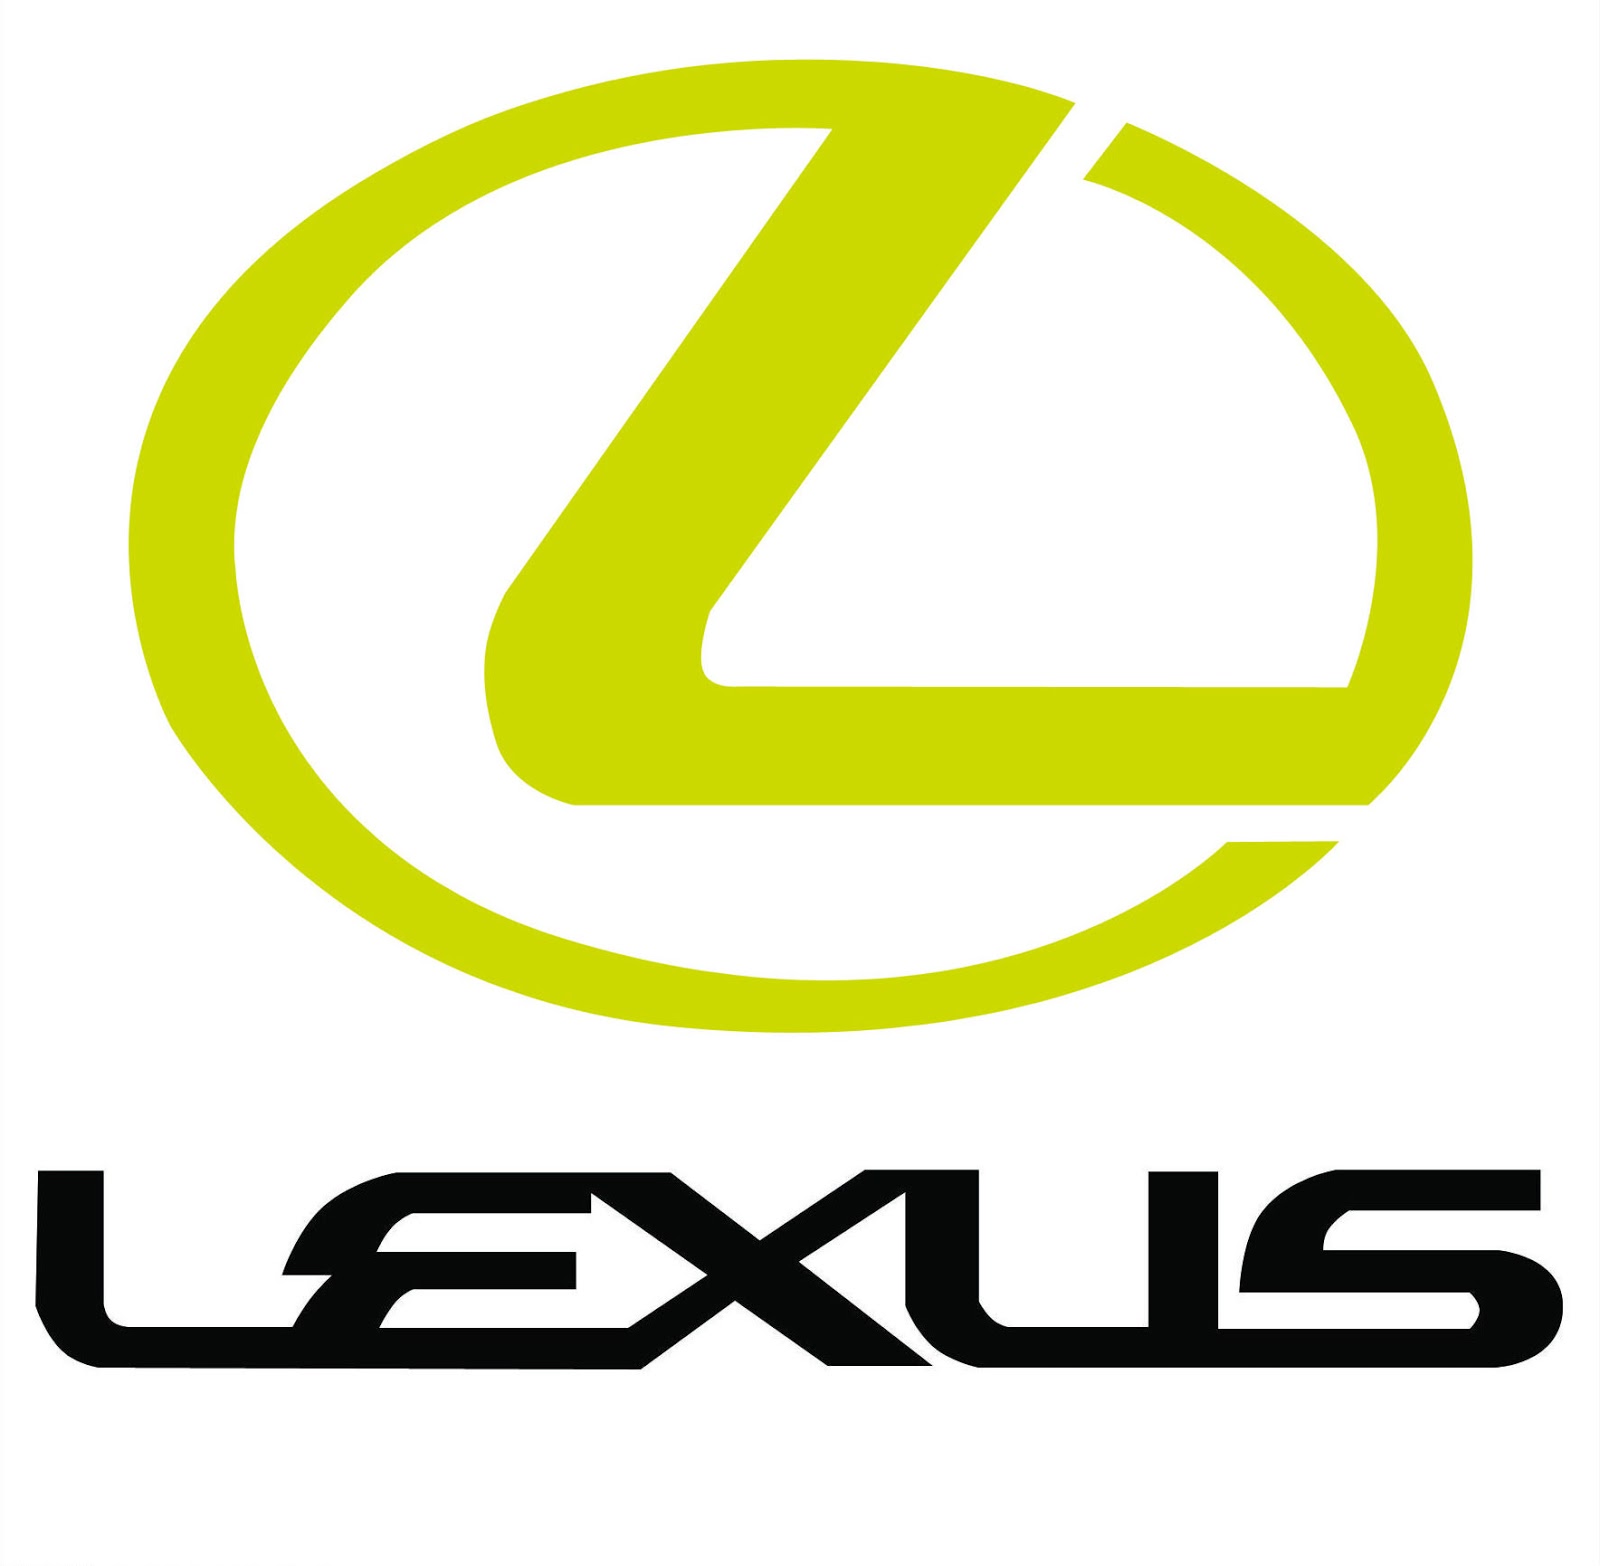 lexus car logos lexus logo final lexus logo lexus front lexus logo 